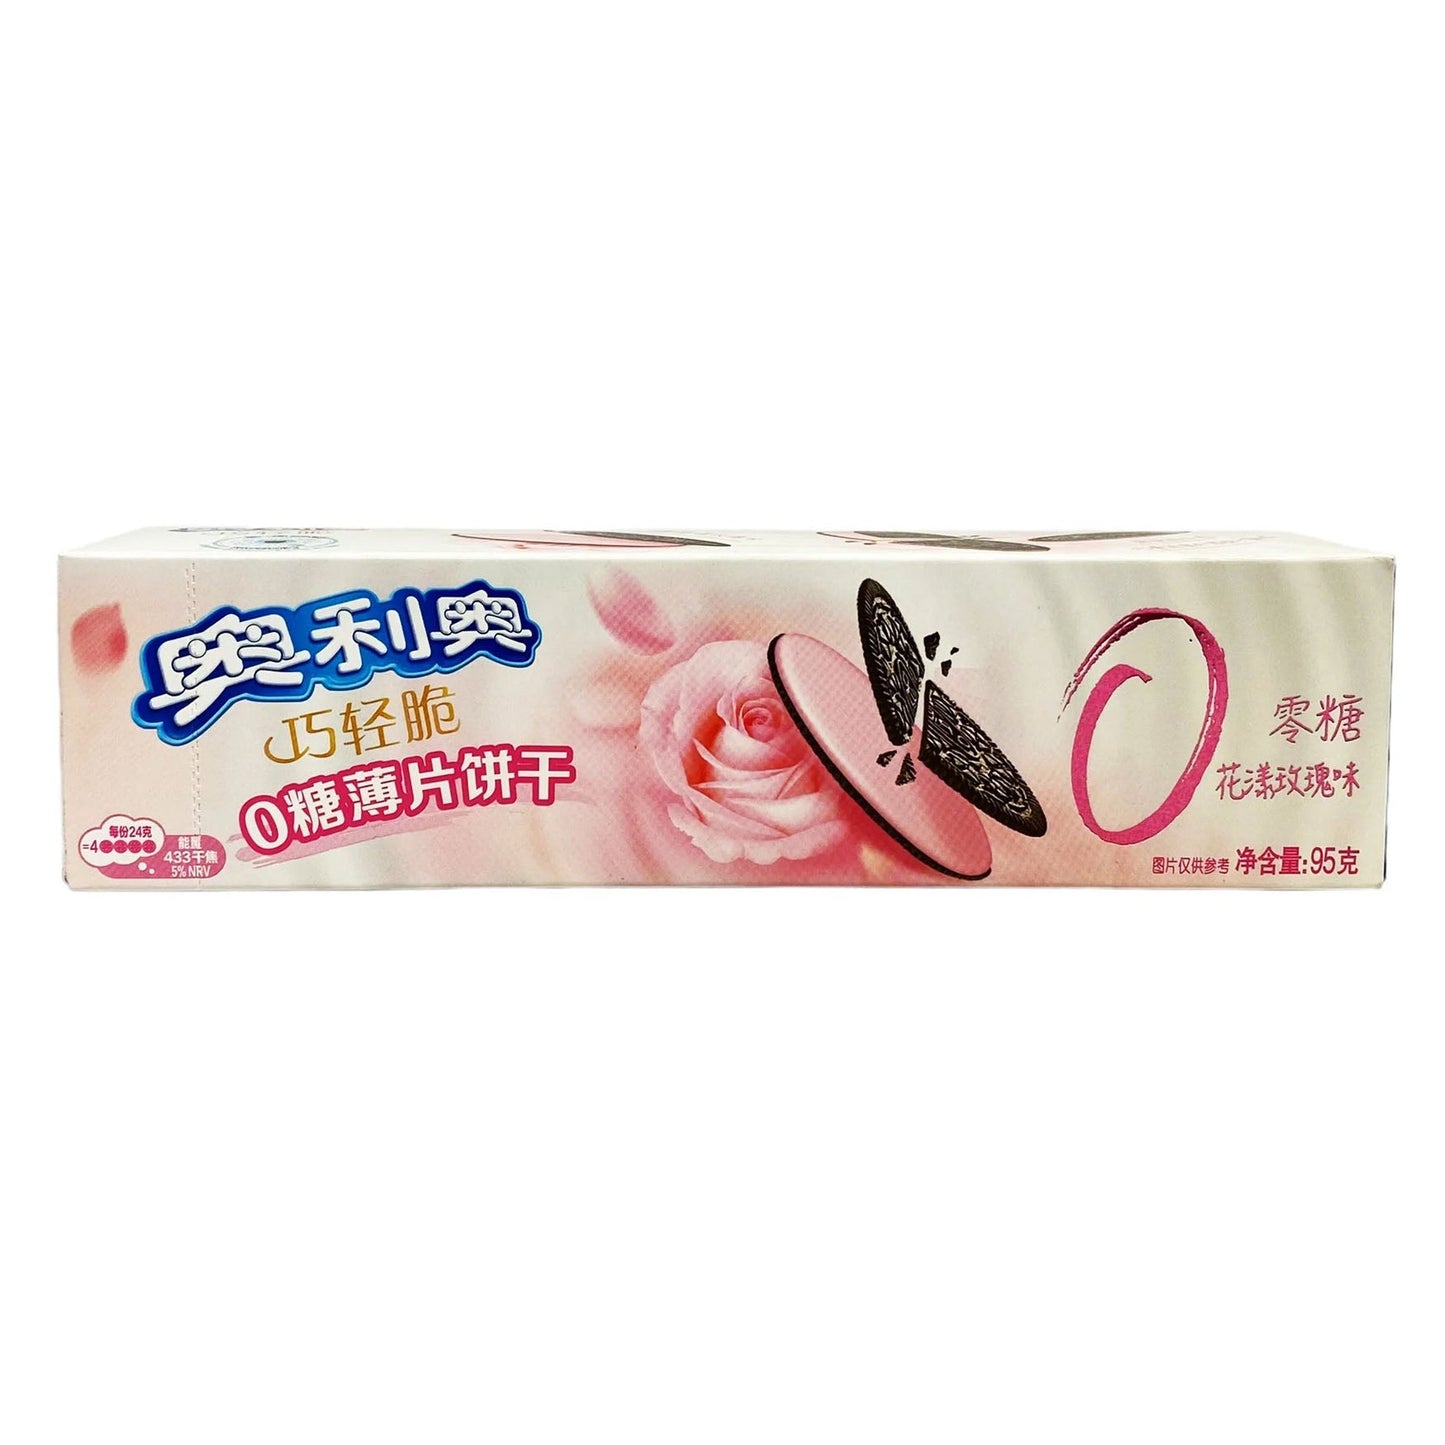 Oreo Zero Sugar Rose Flavor (96g) (China) 6-Pack